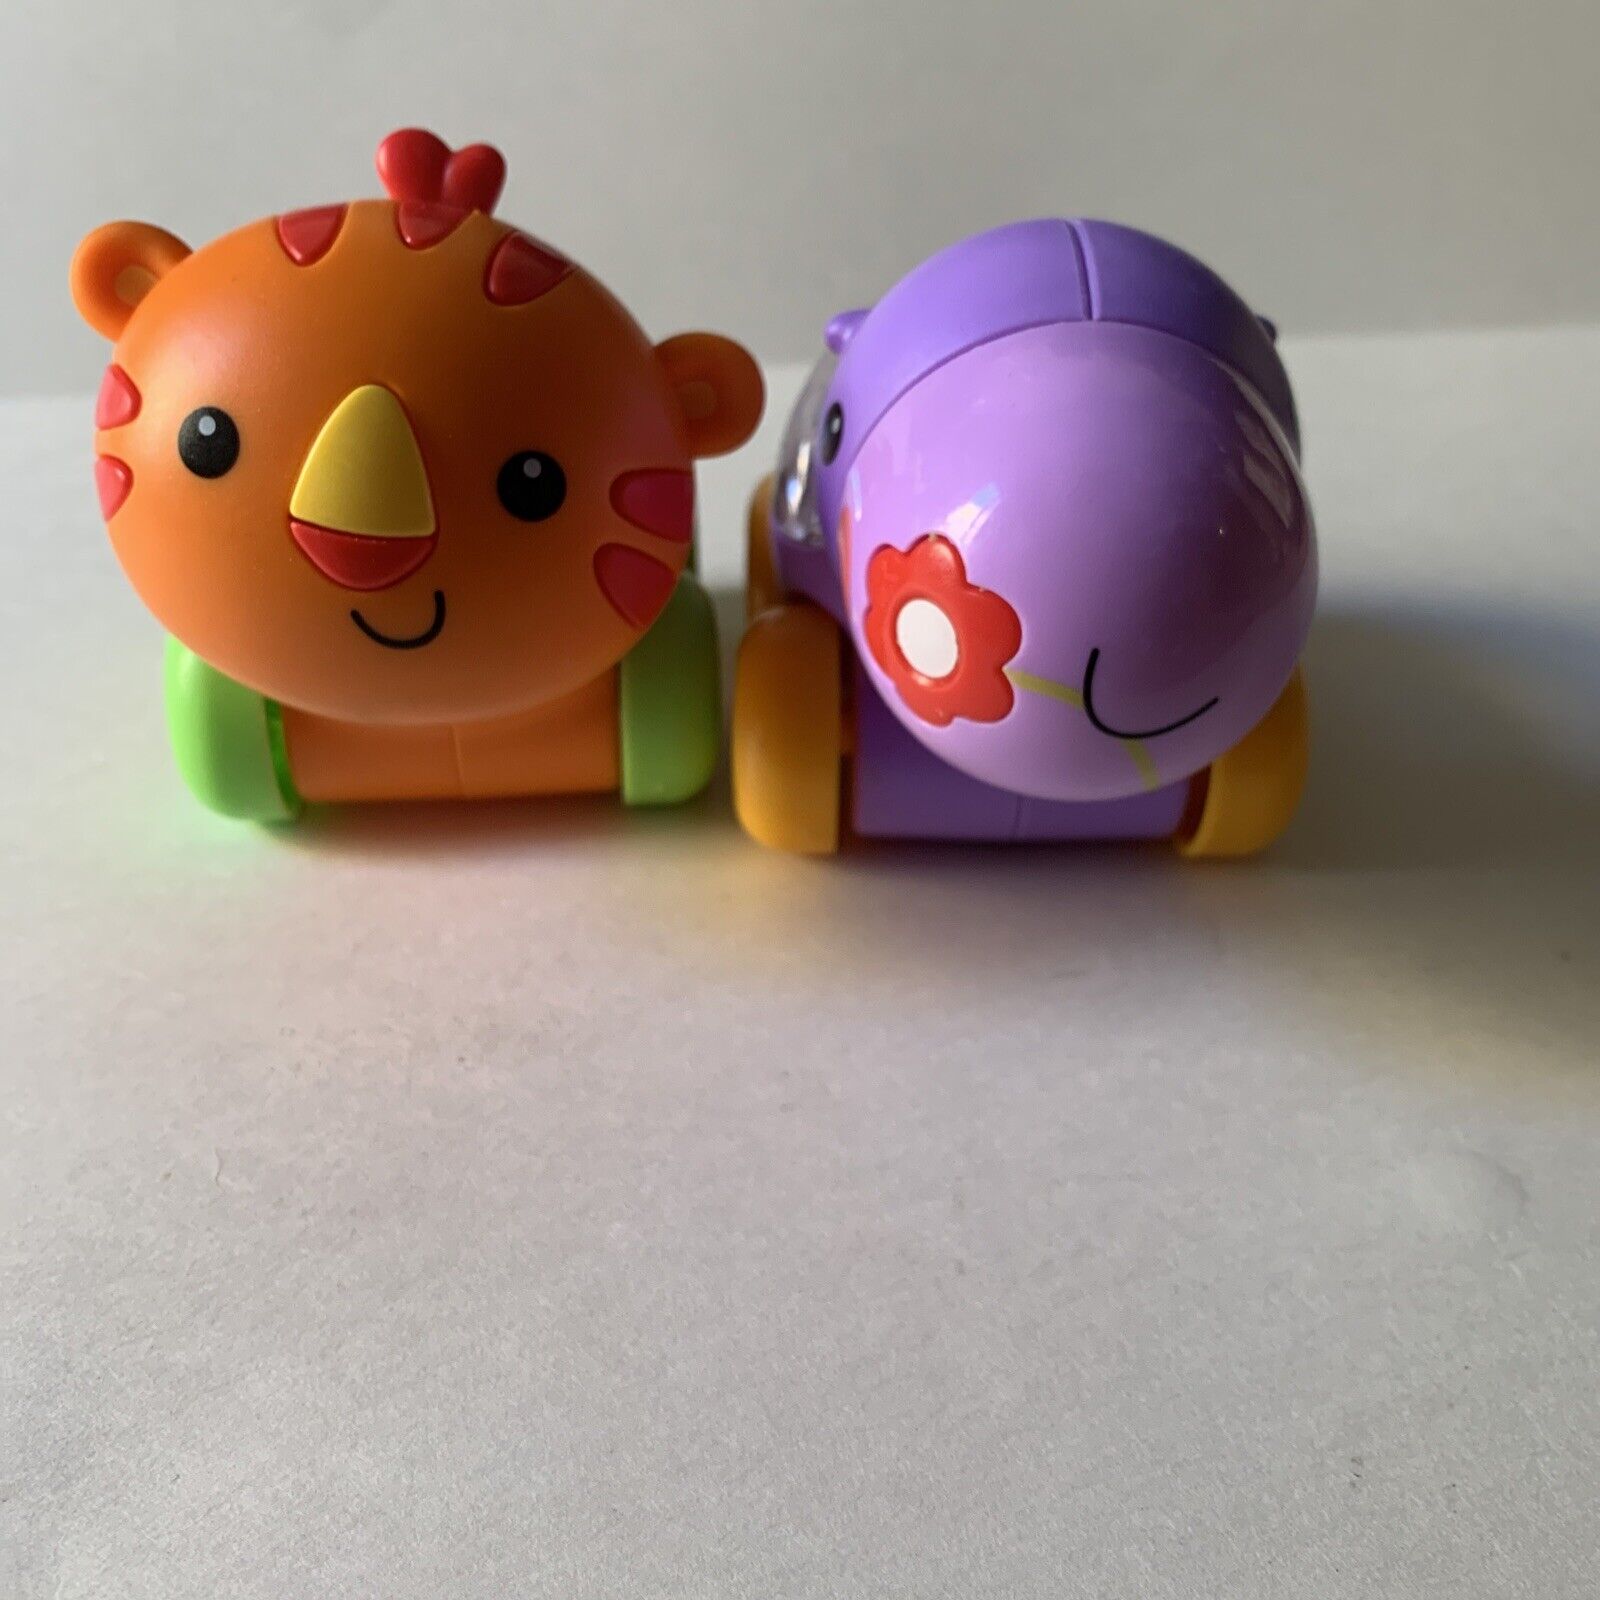 Assert Kritiek Bedelen Fisher Price Toddler Toy Poppity Pop Hippo Lot Of 2 Toys | eBay